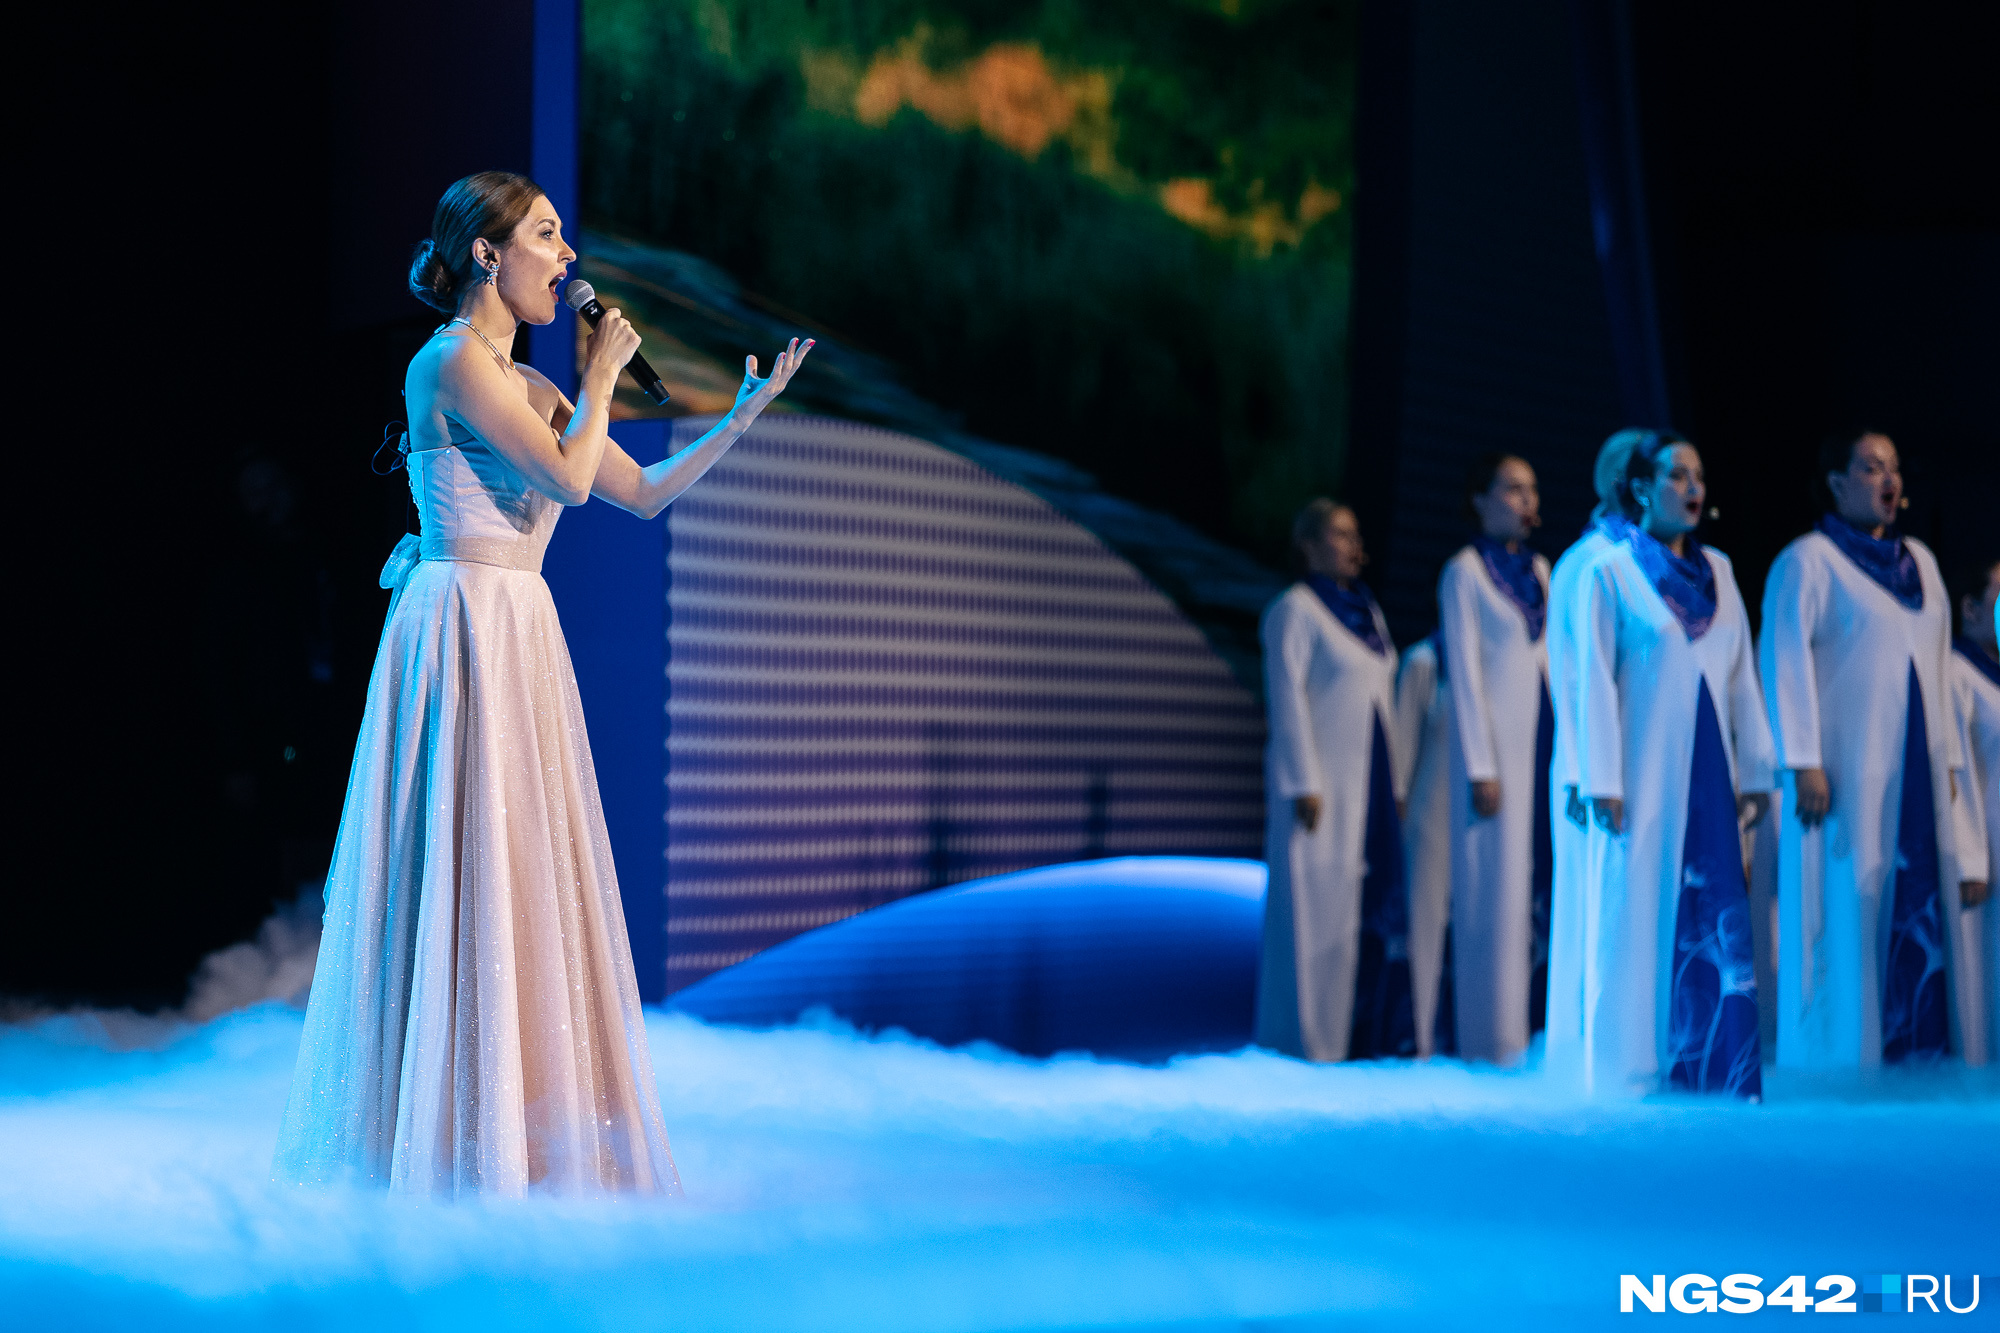 Женский форум в Кемерове завершился праздничным концертом — как это было